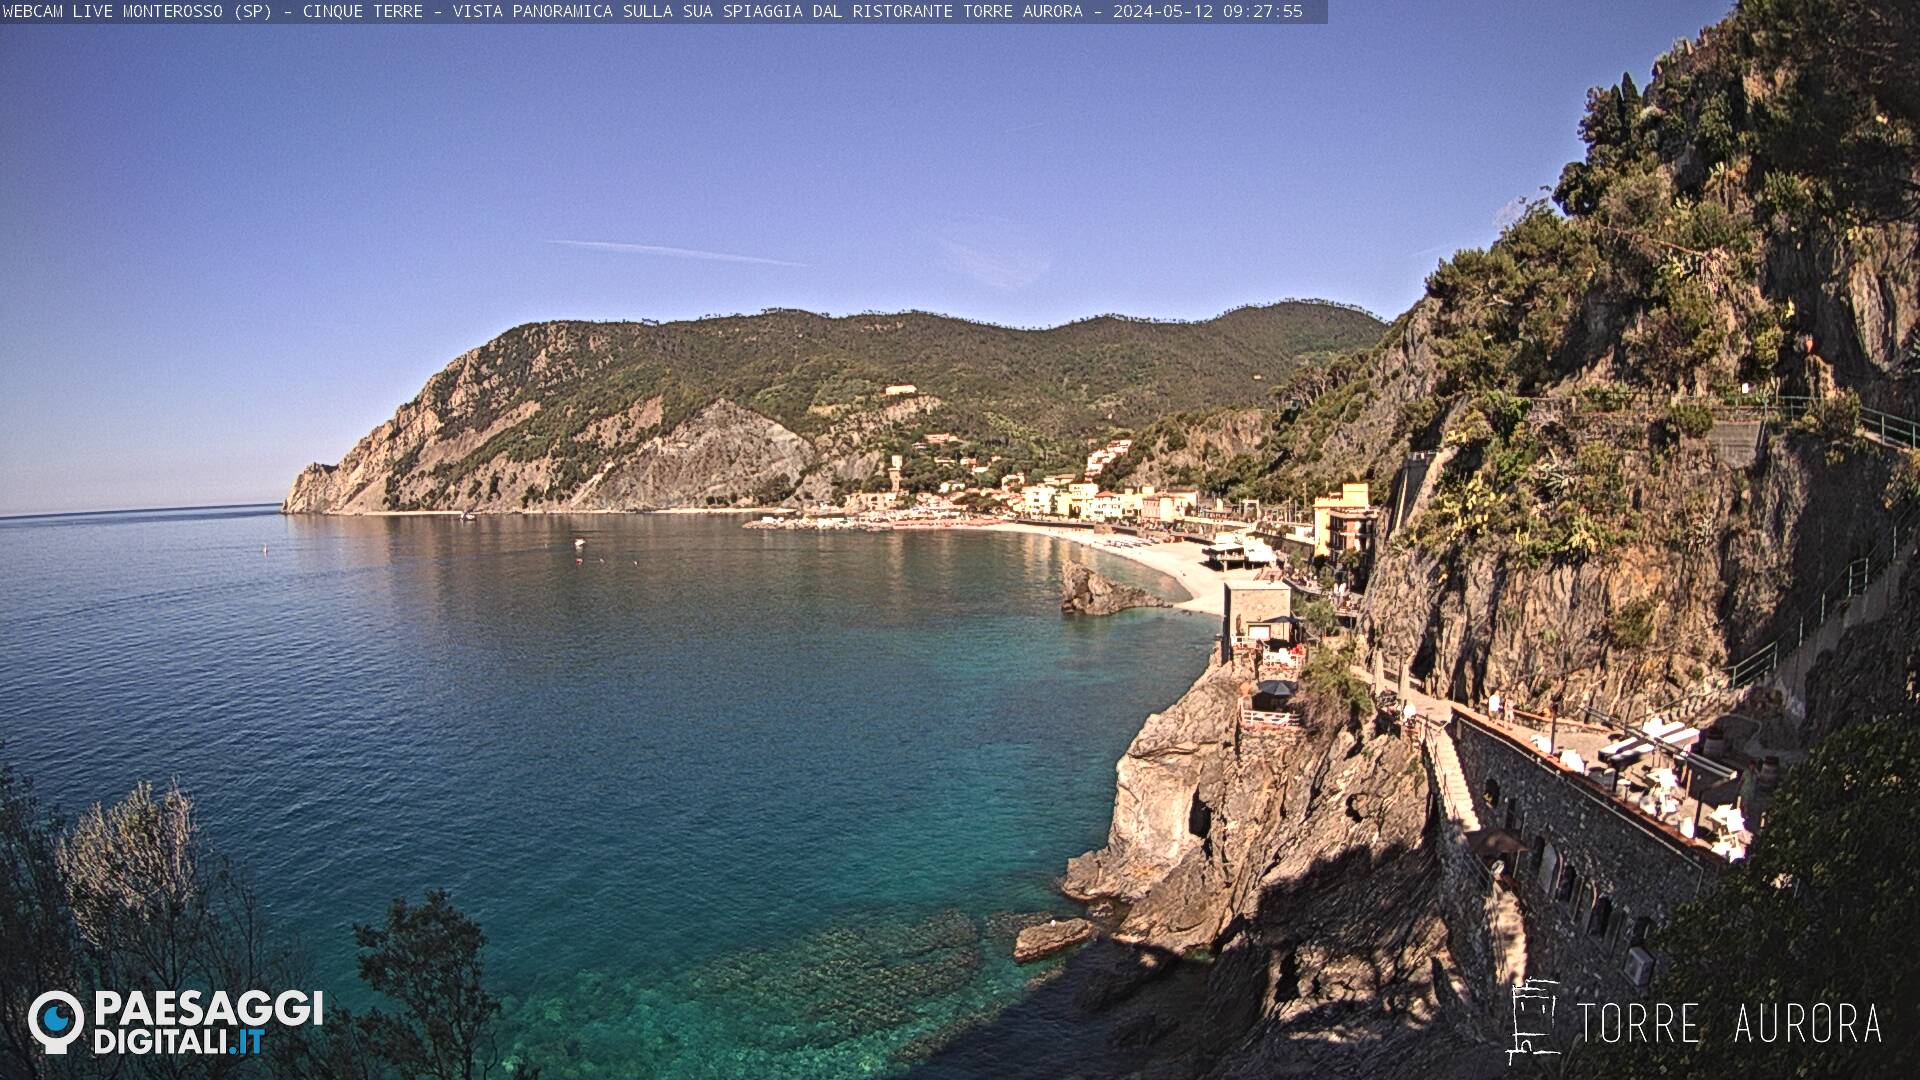 Monterosso al Mare (Cinque Terre) Je. 09:28